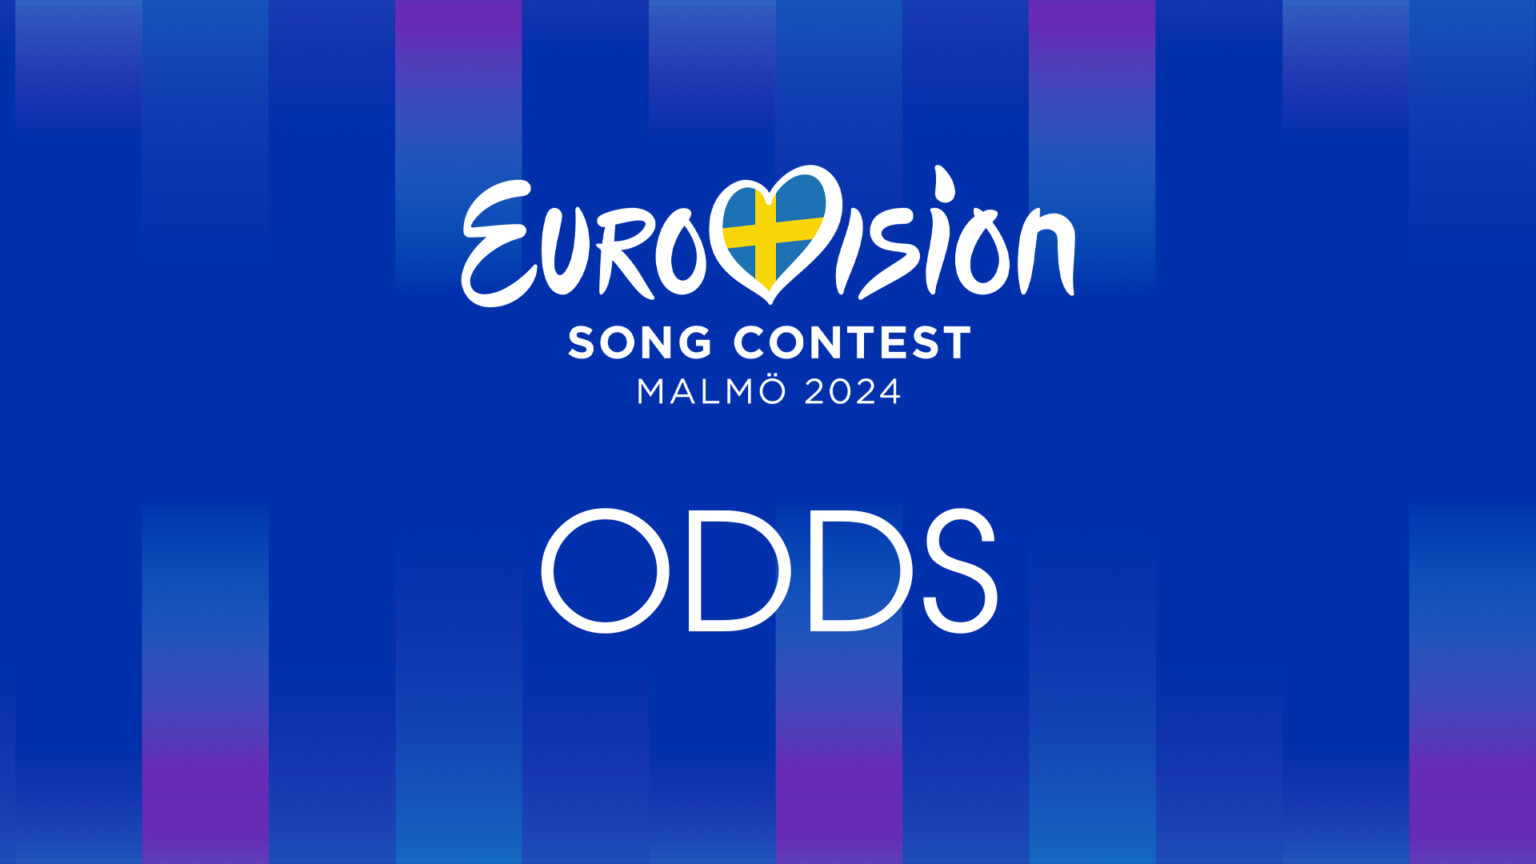 Eurovisión 2024 Odds tendencias y análisis de pronósticos en tiempo real